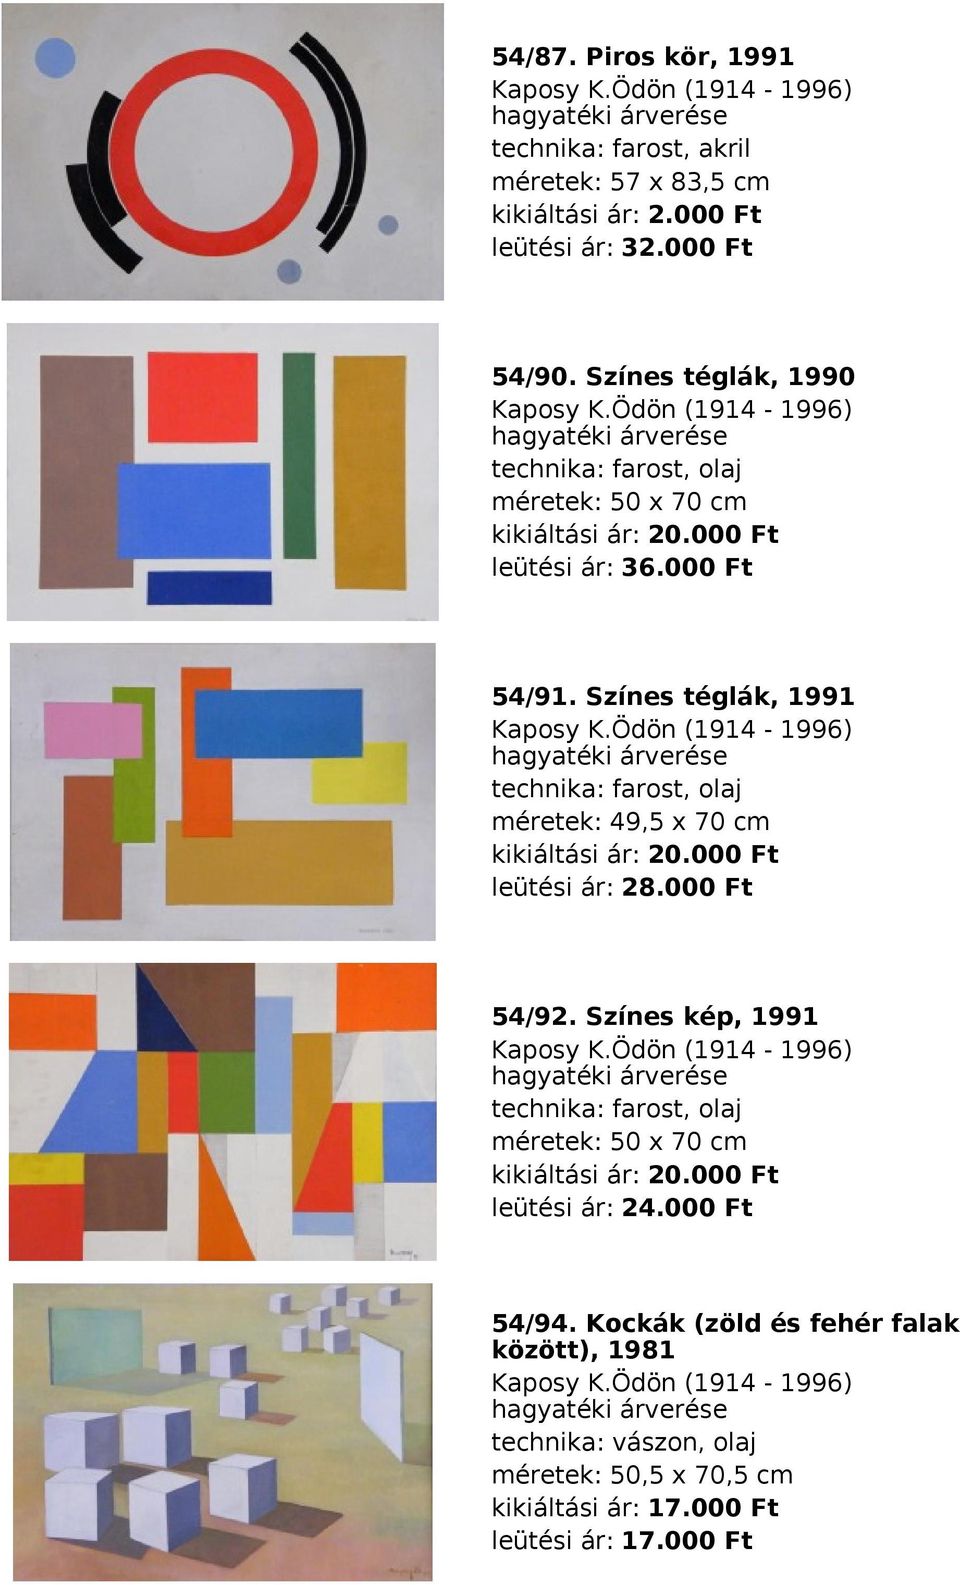 Színes téglák, 1991 méretek: 49,5 x 70 cm leütési ár: 28.000 Ft 54/92.